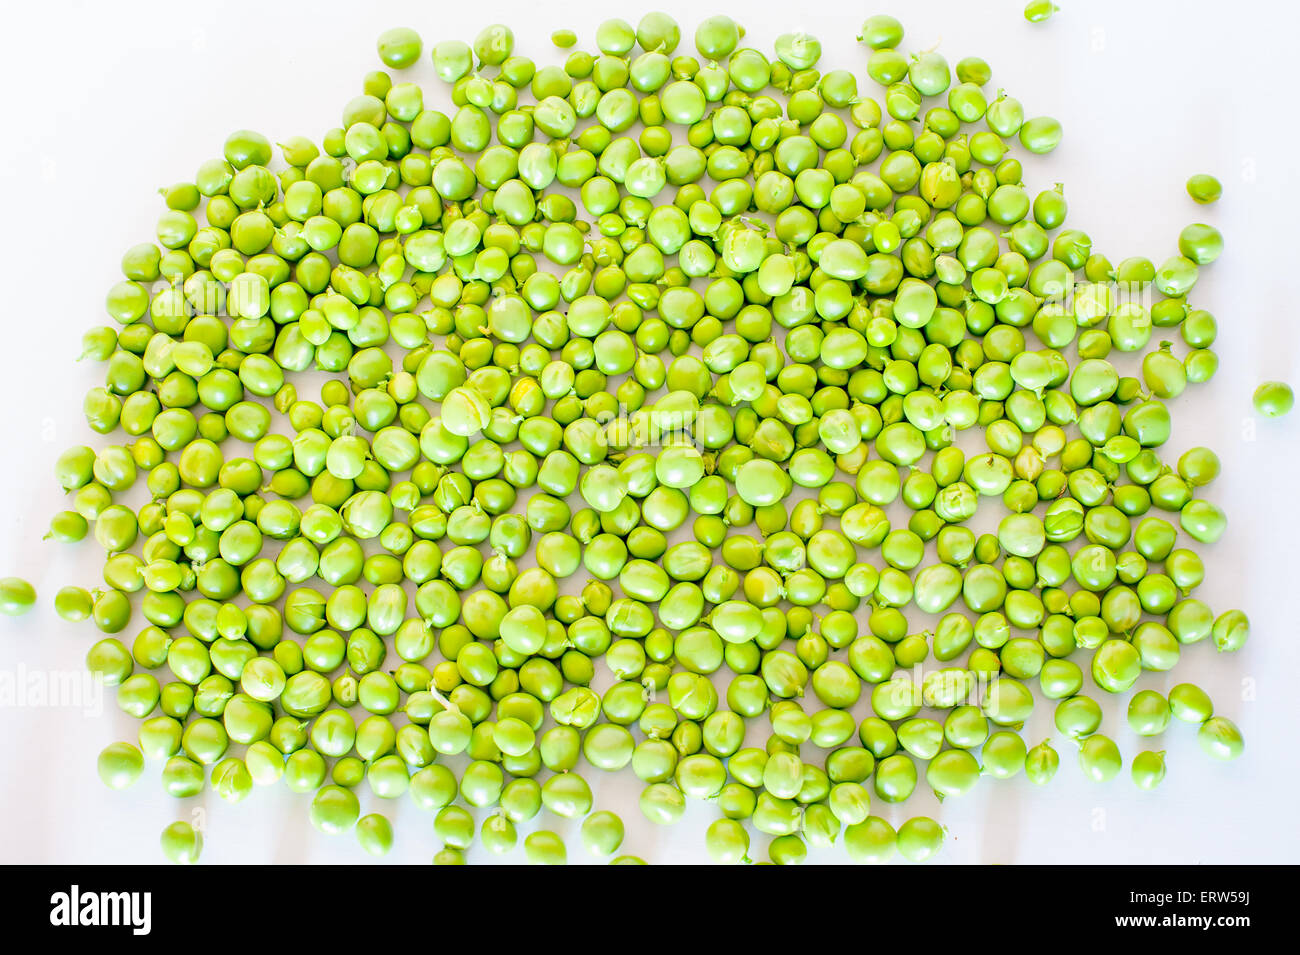 Heap of fresh peas on white background Stock Photo